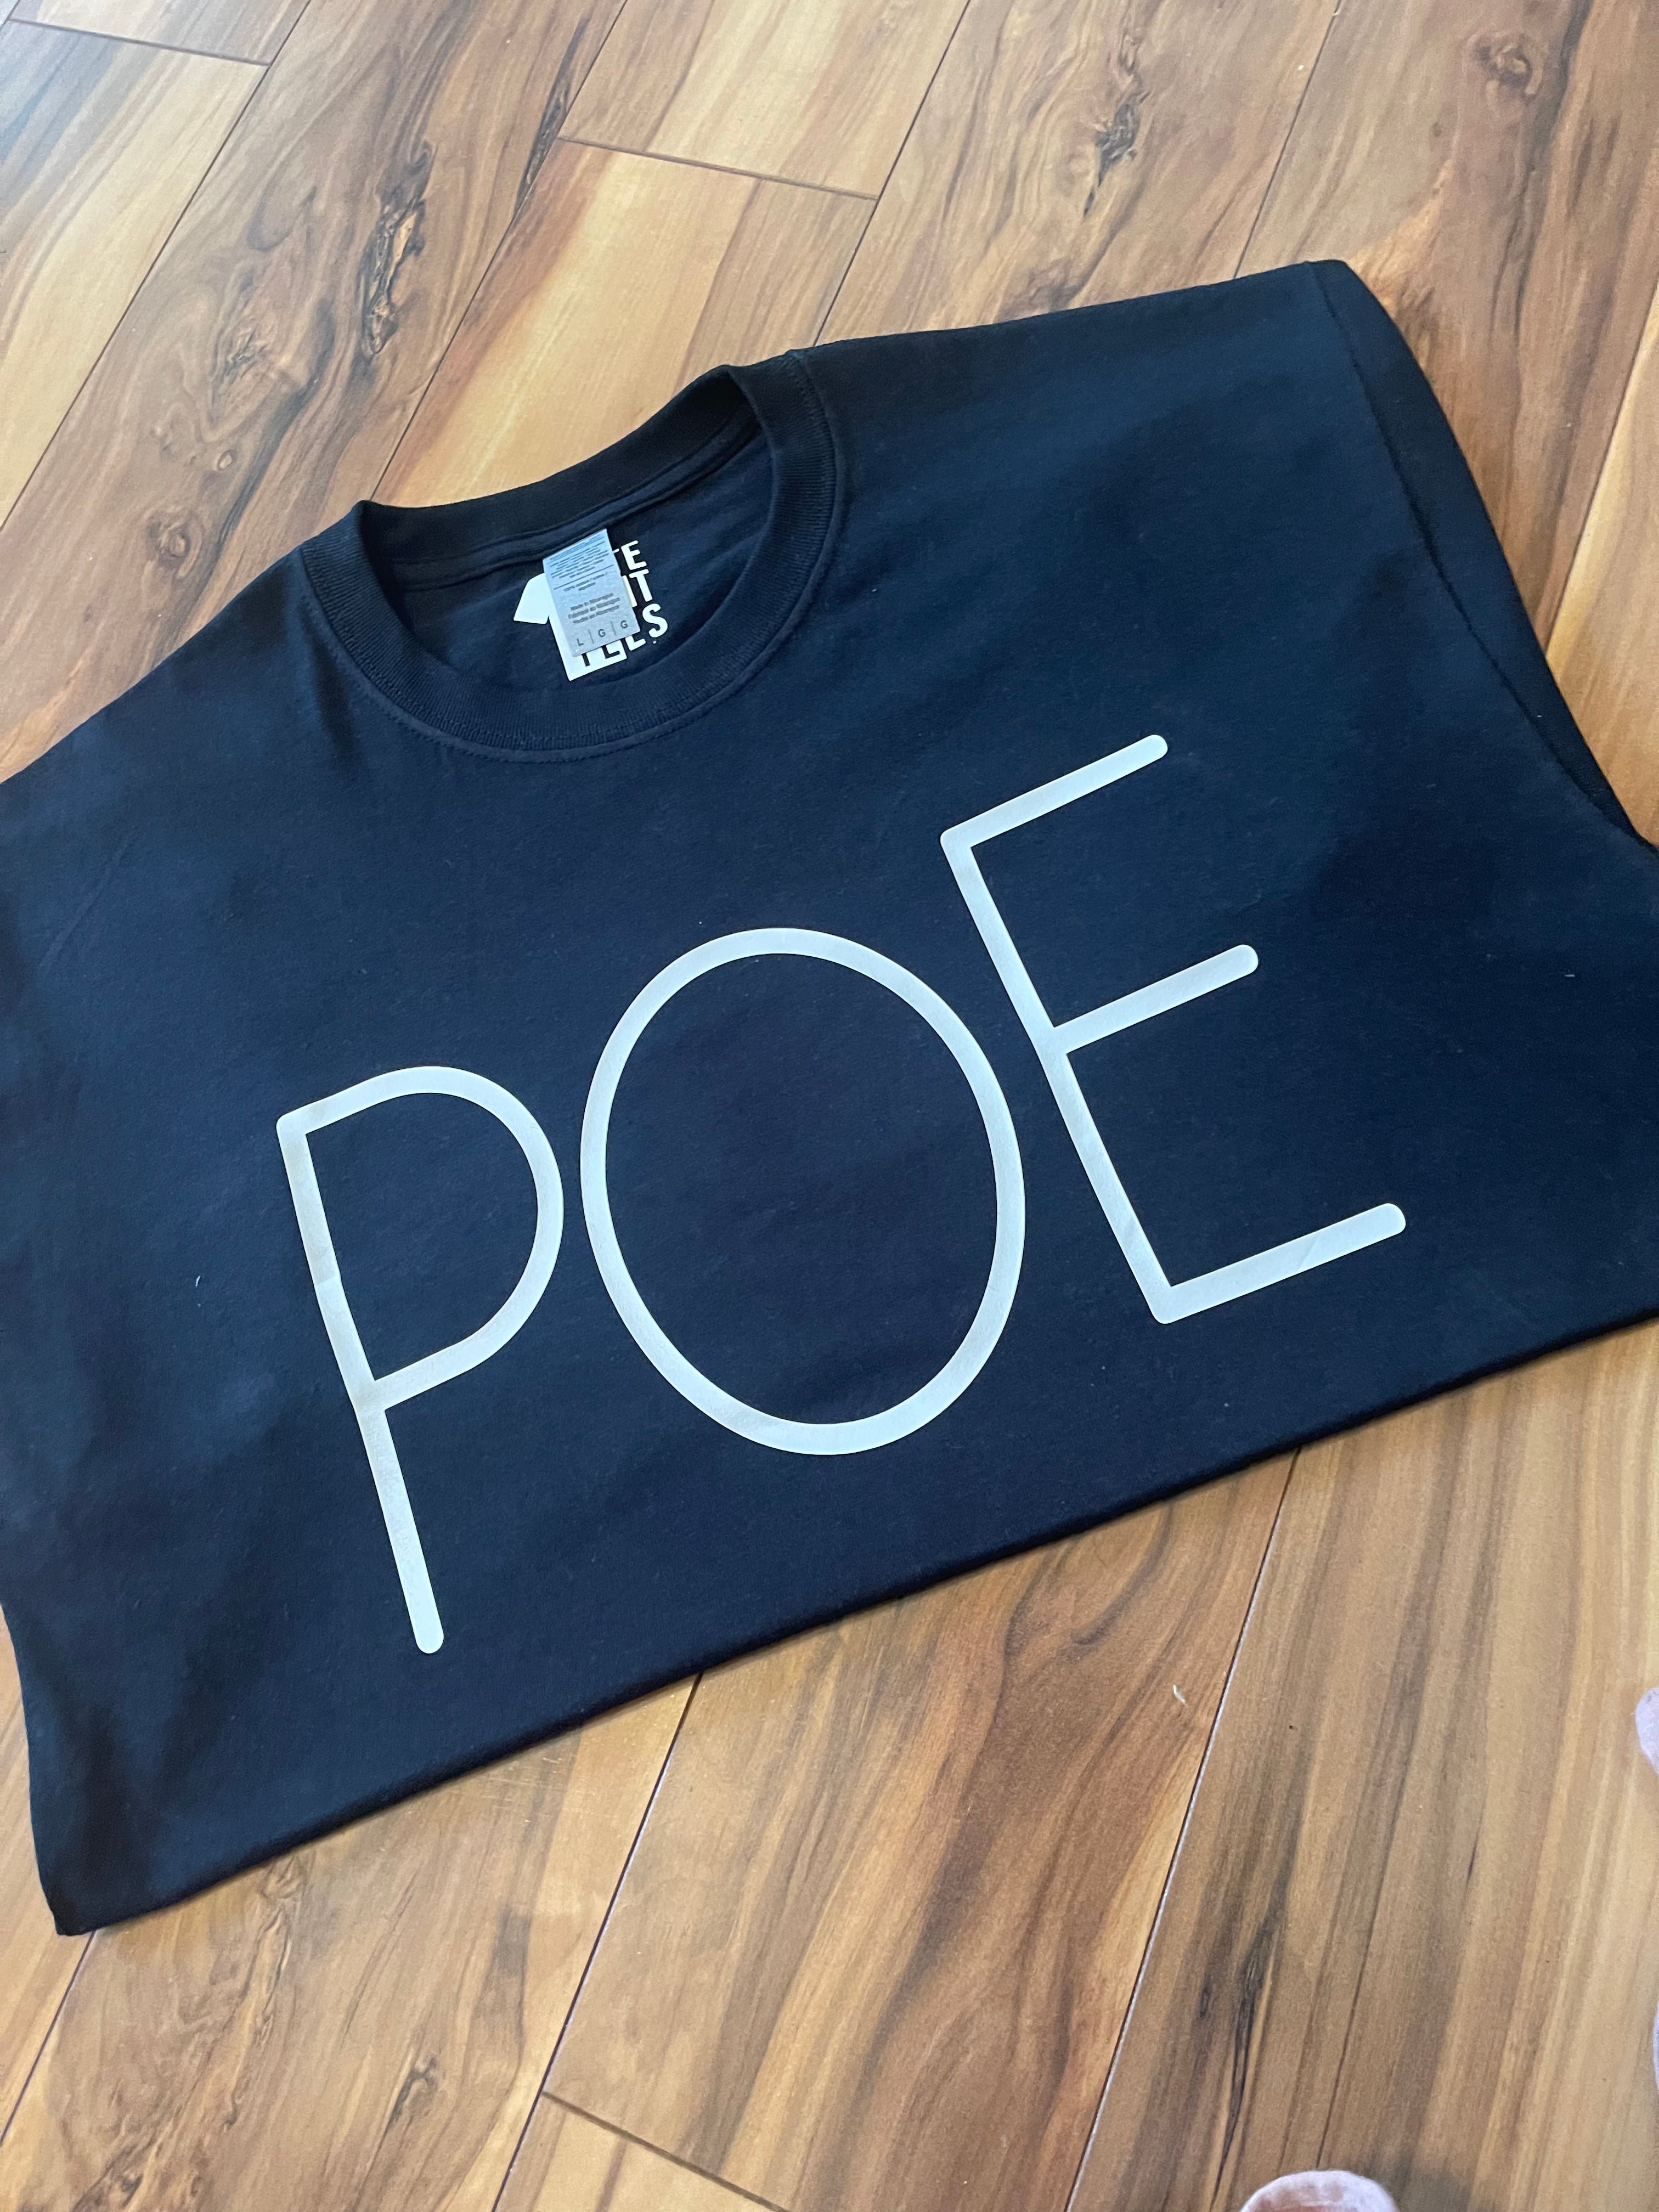 POE Shirt